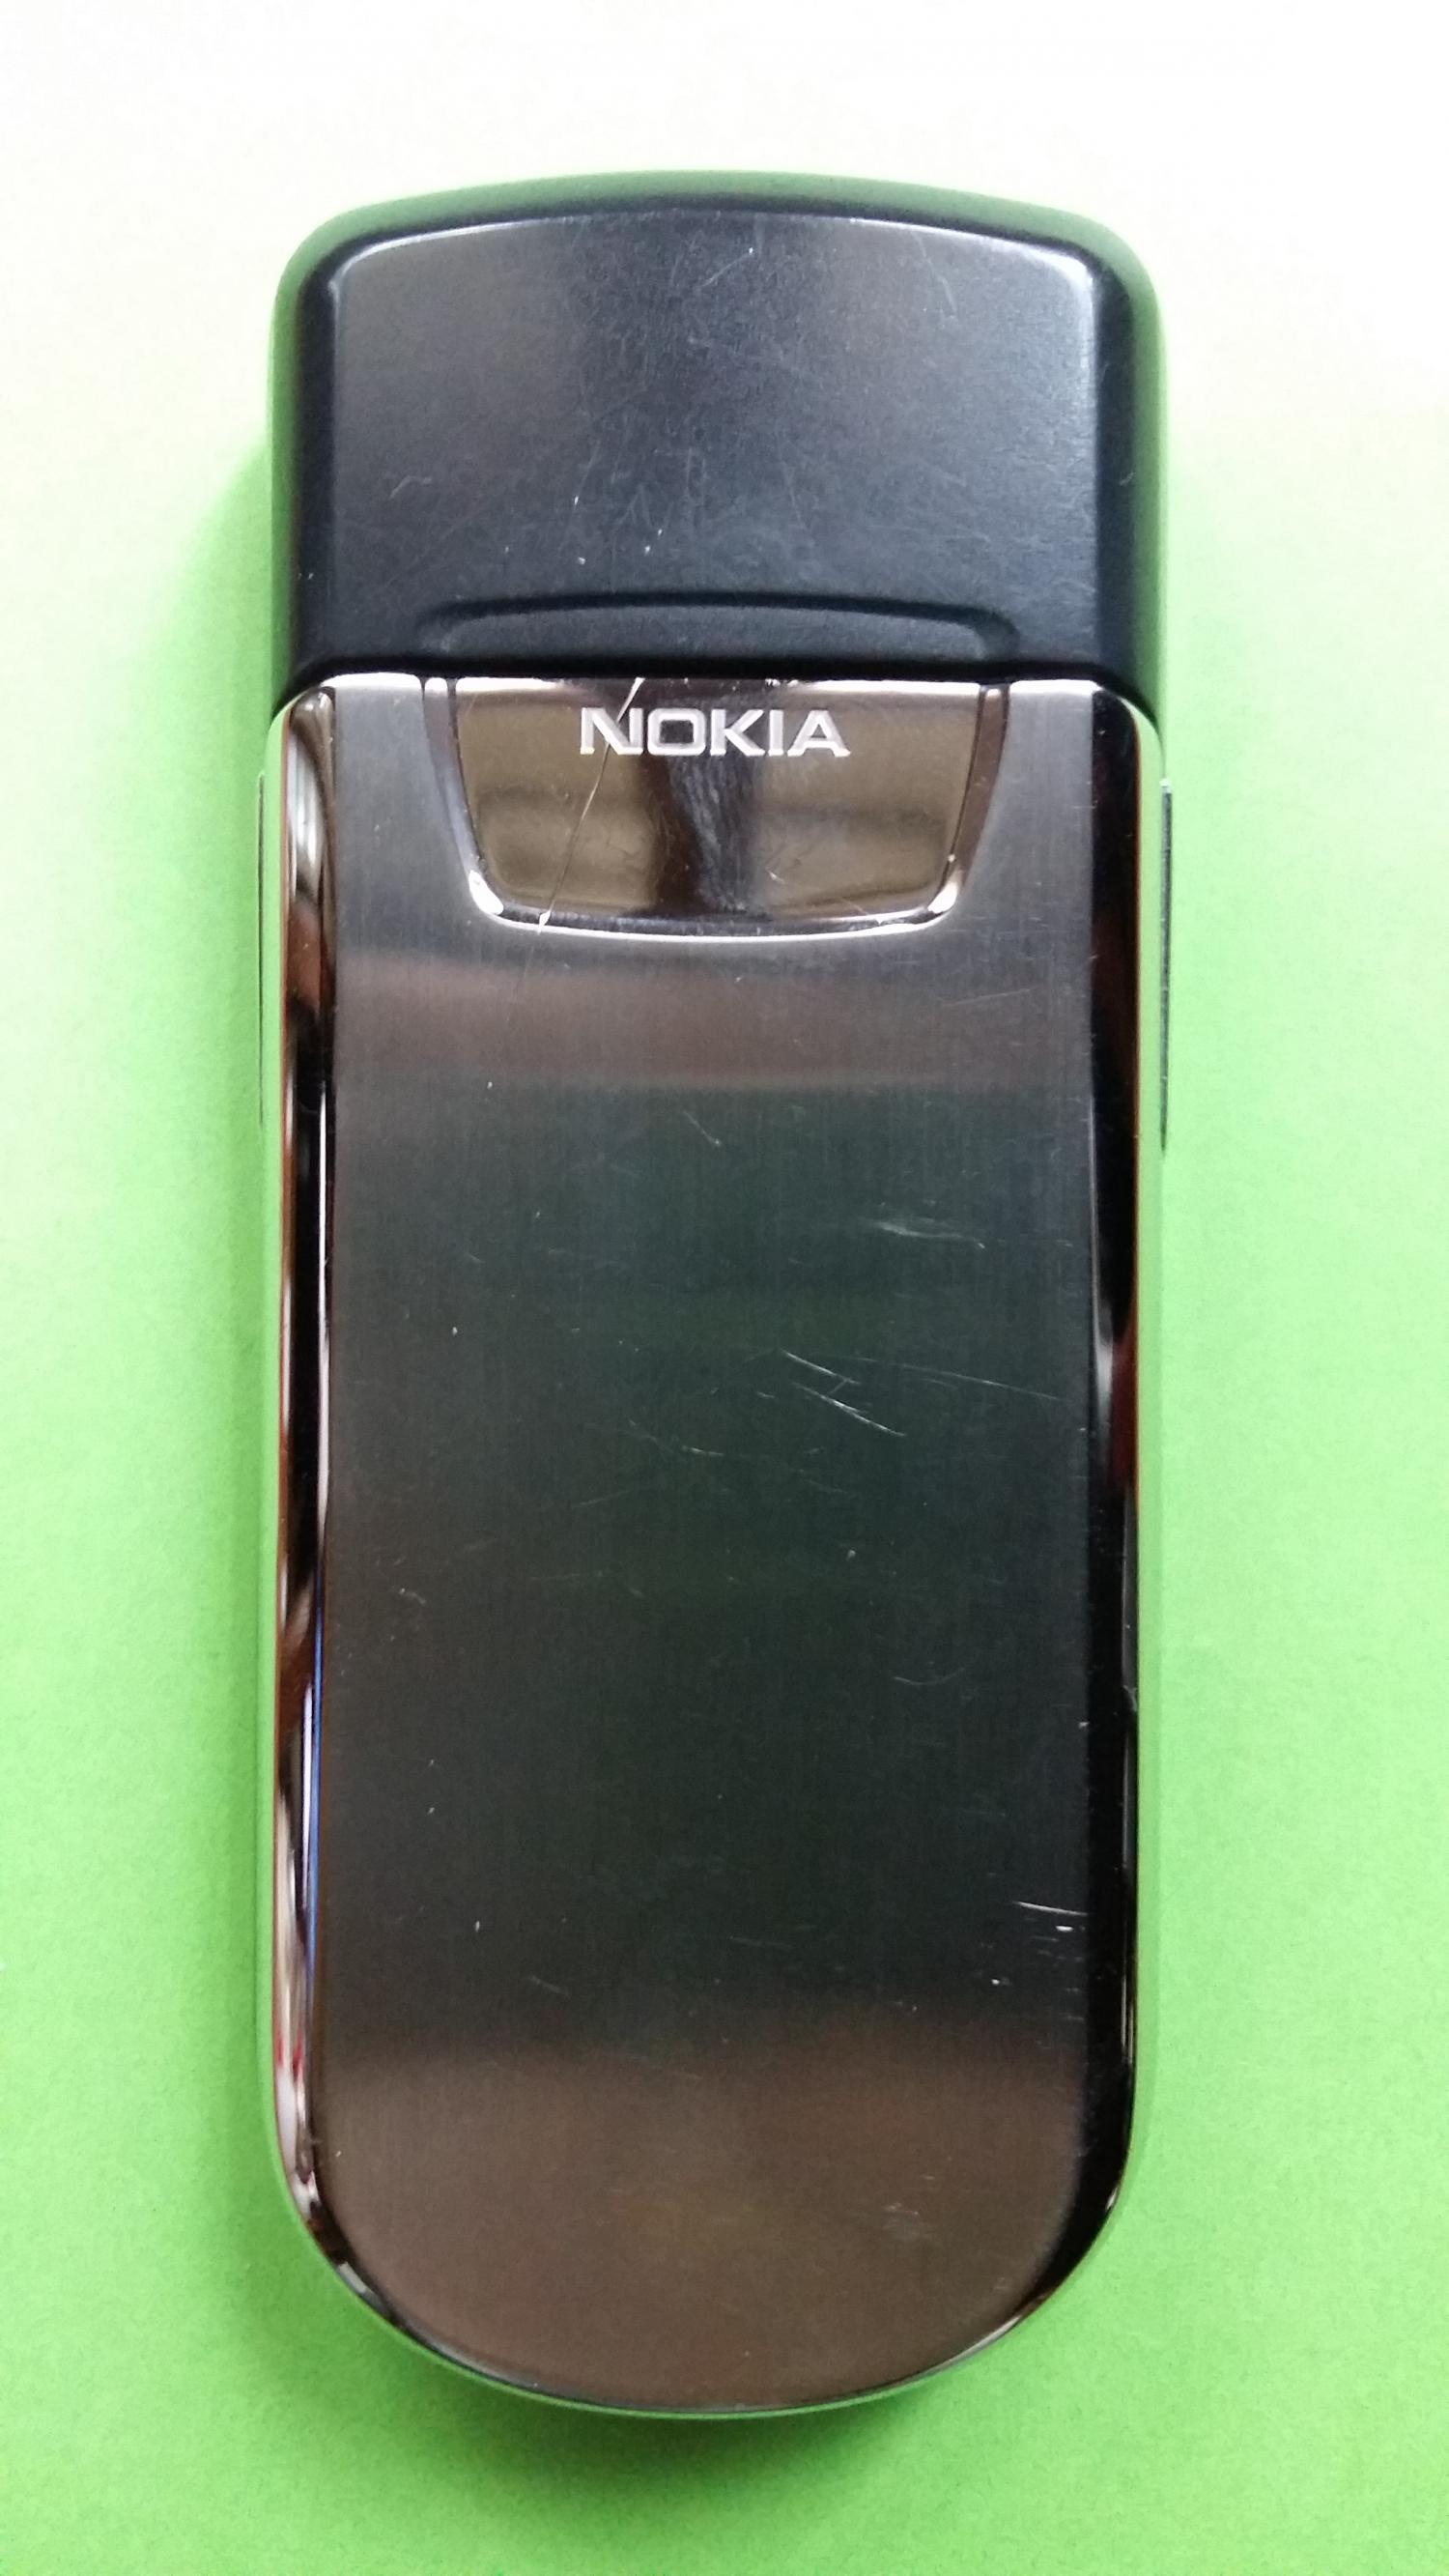 image-7306426-Nokia 8800 (1)5.jpg